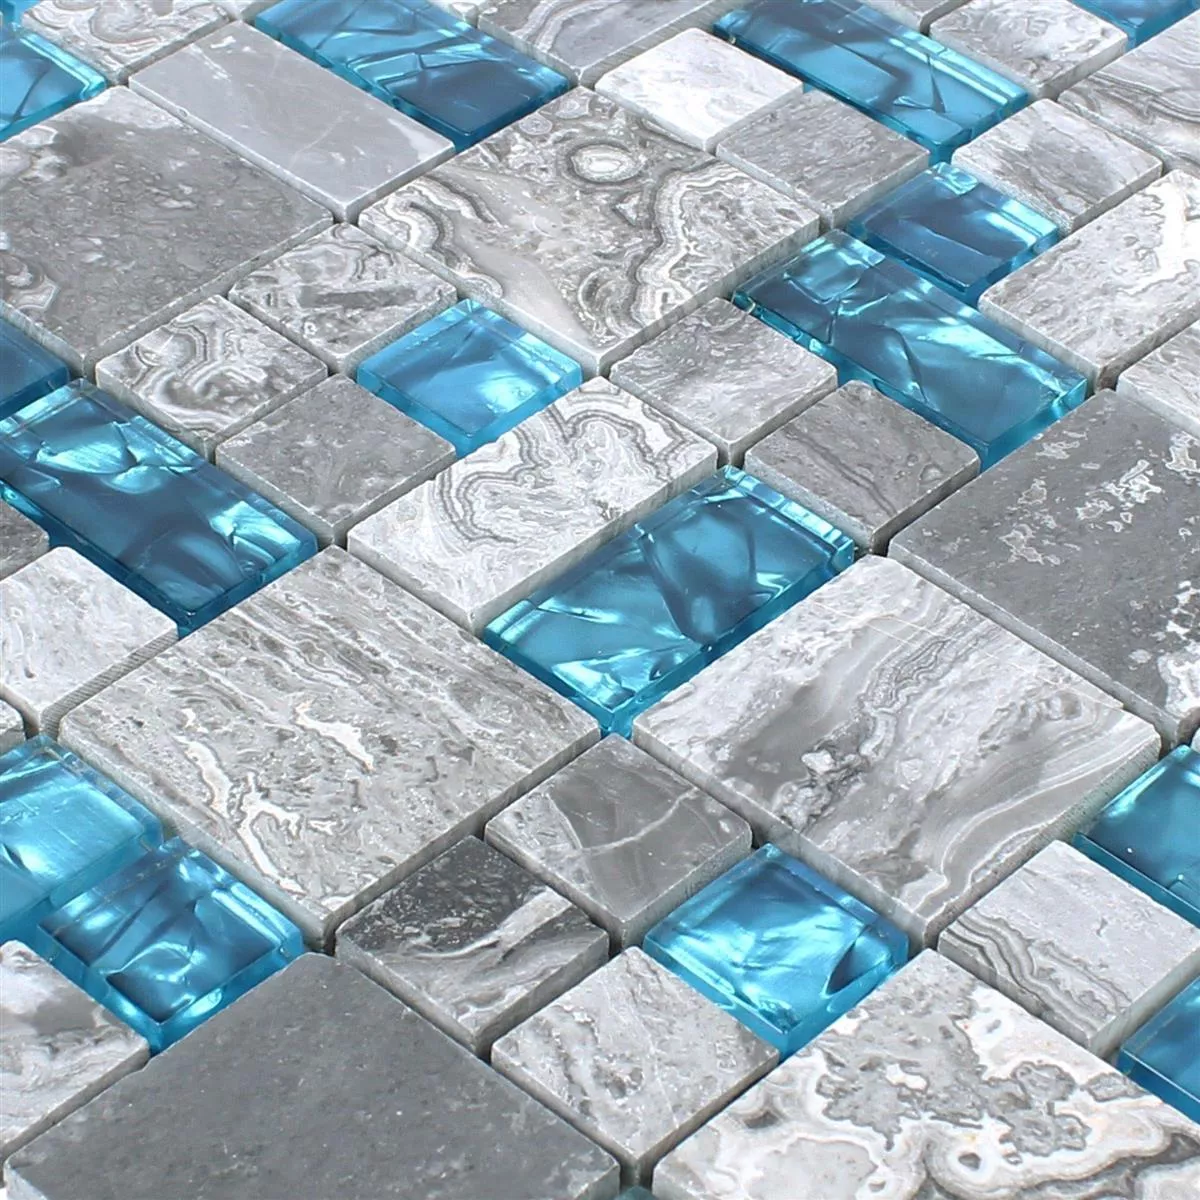 Mosaico De Vidro Ladrilhos De Pedra Natural Sinop Cinza Azul 2 Mix